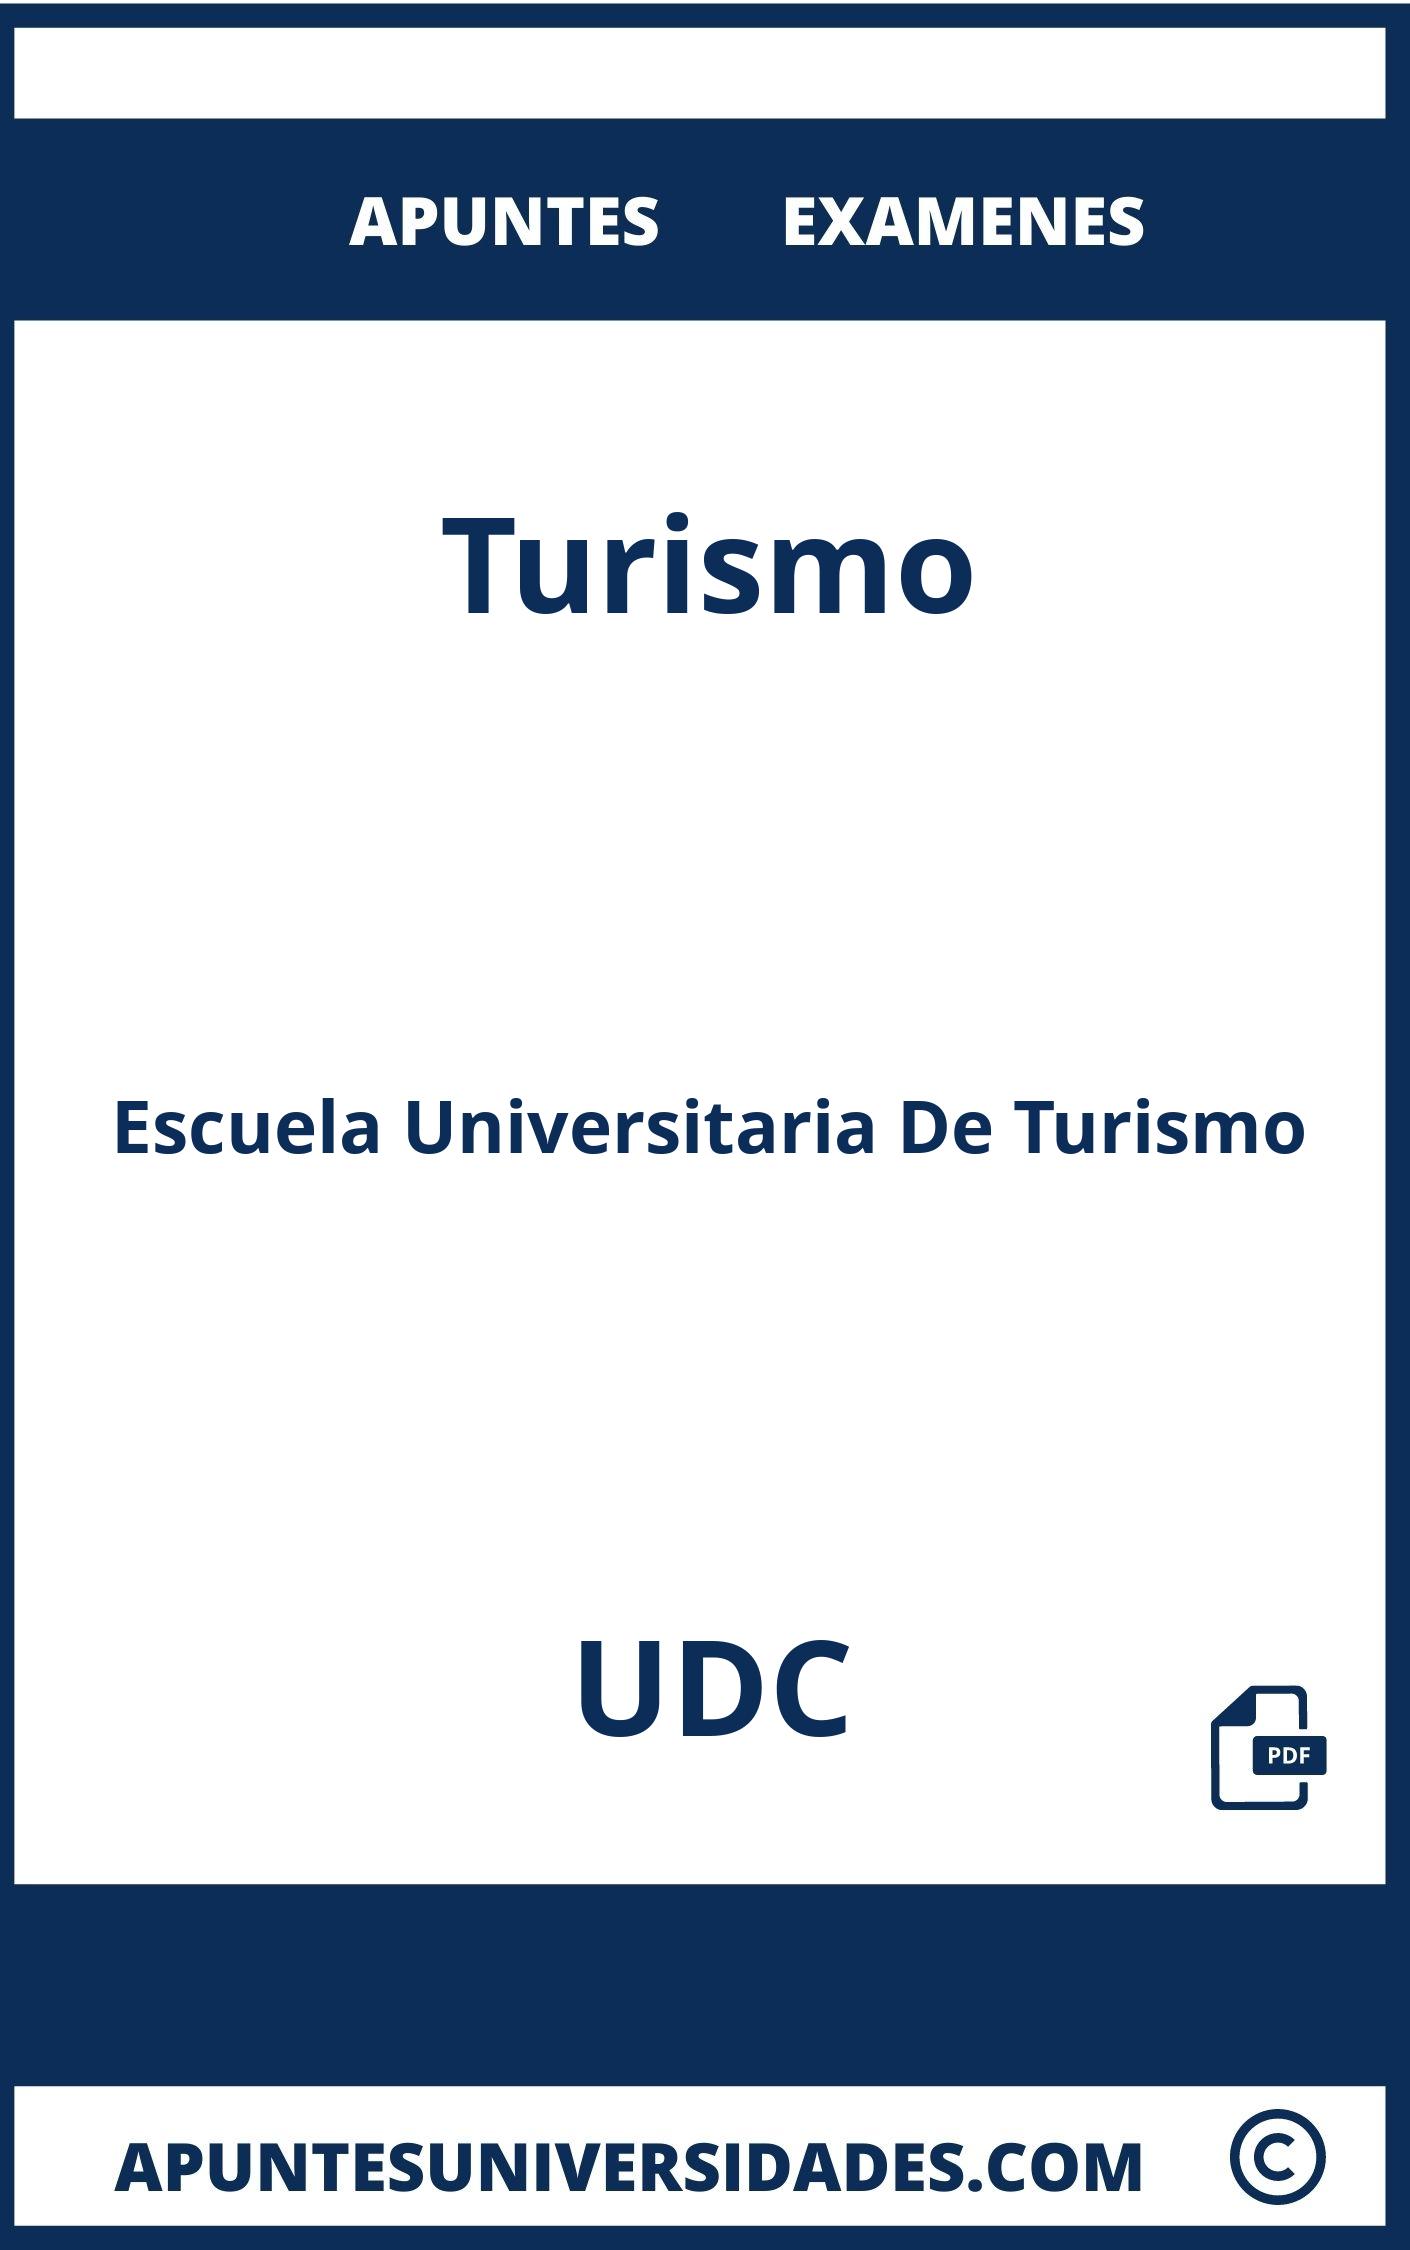 Apuntes y Examenes Turismo UDC